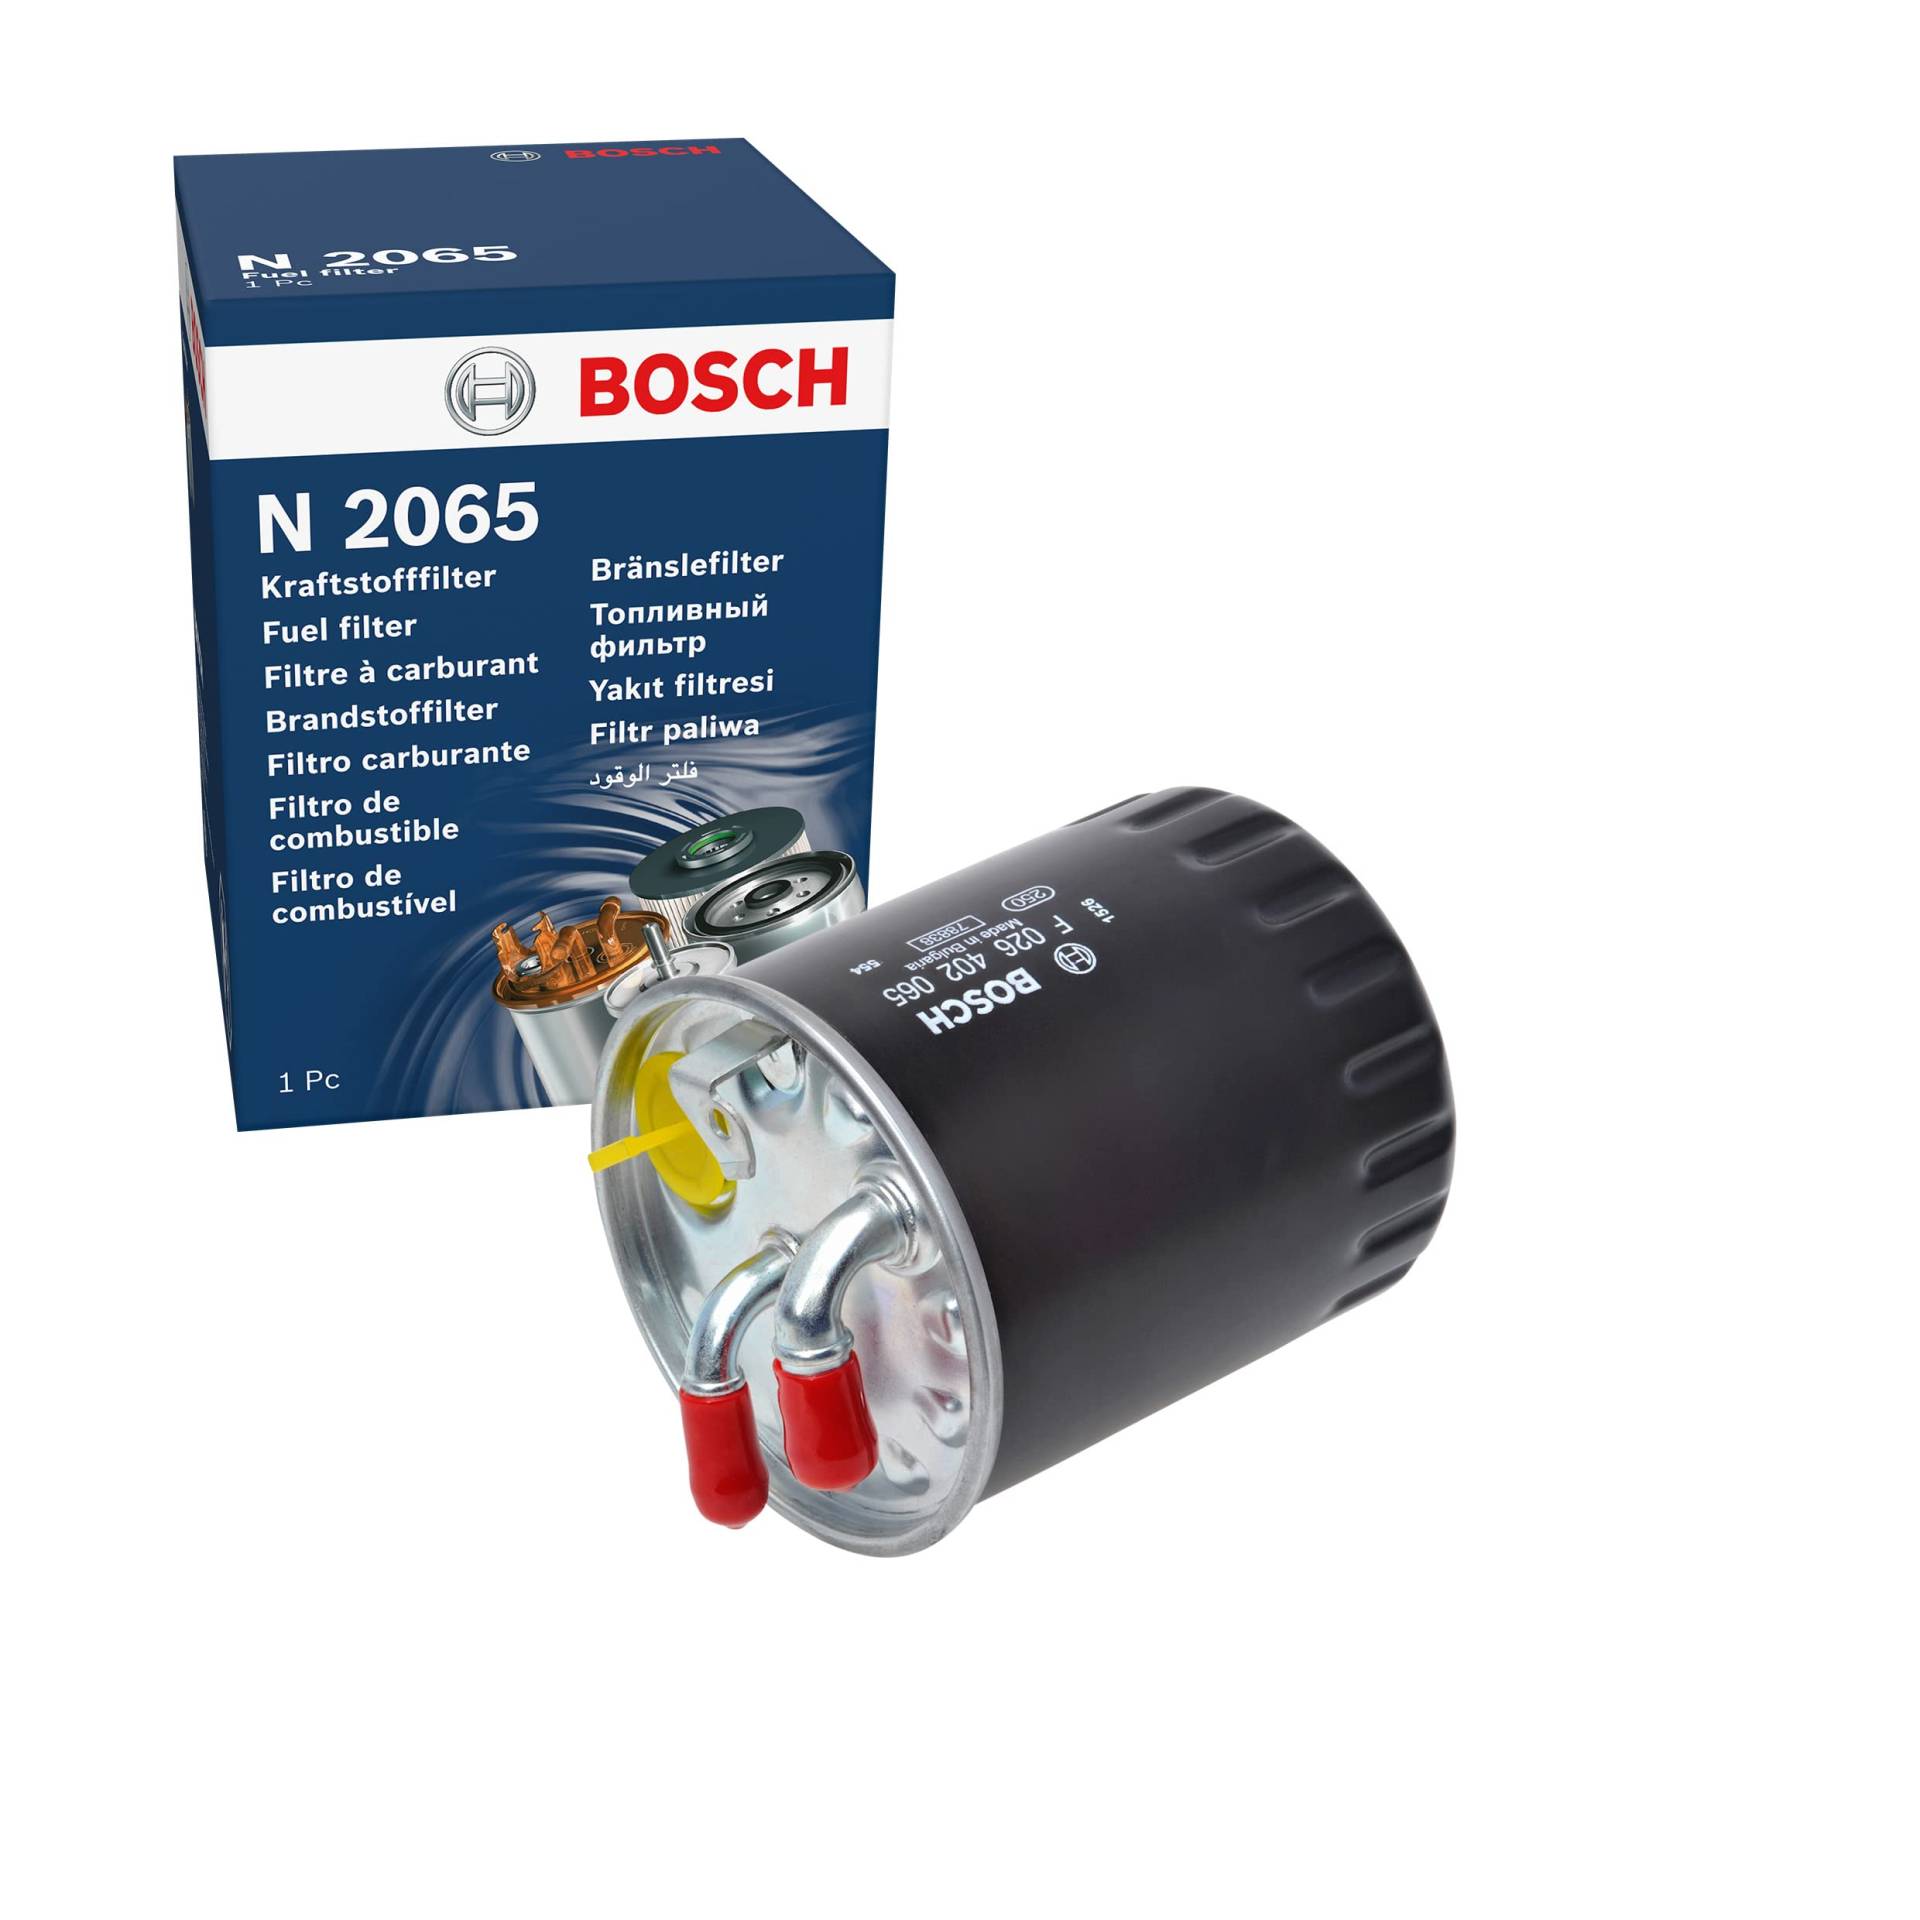 Bosch N2065 - Dieselfilter Auto von Bosch Automotive